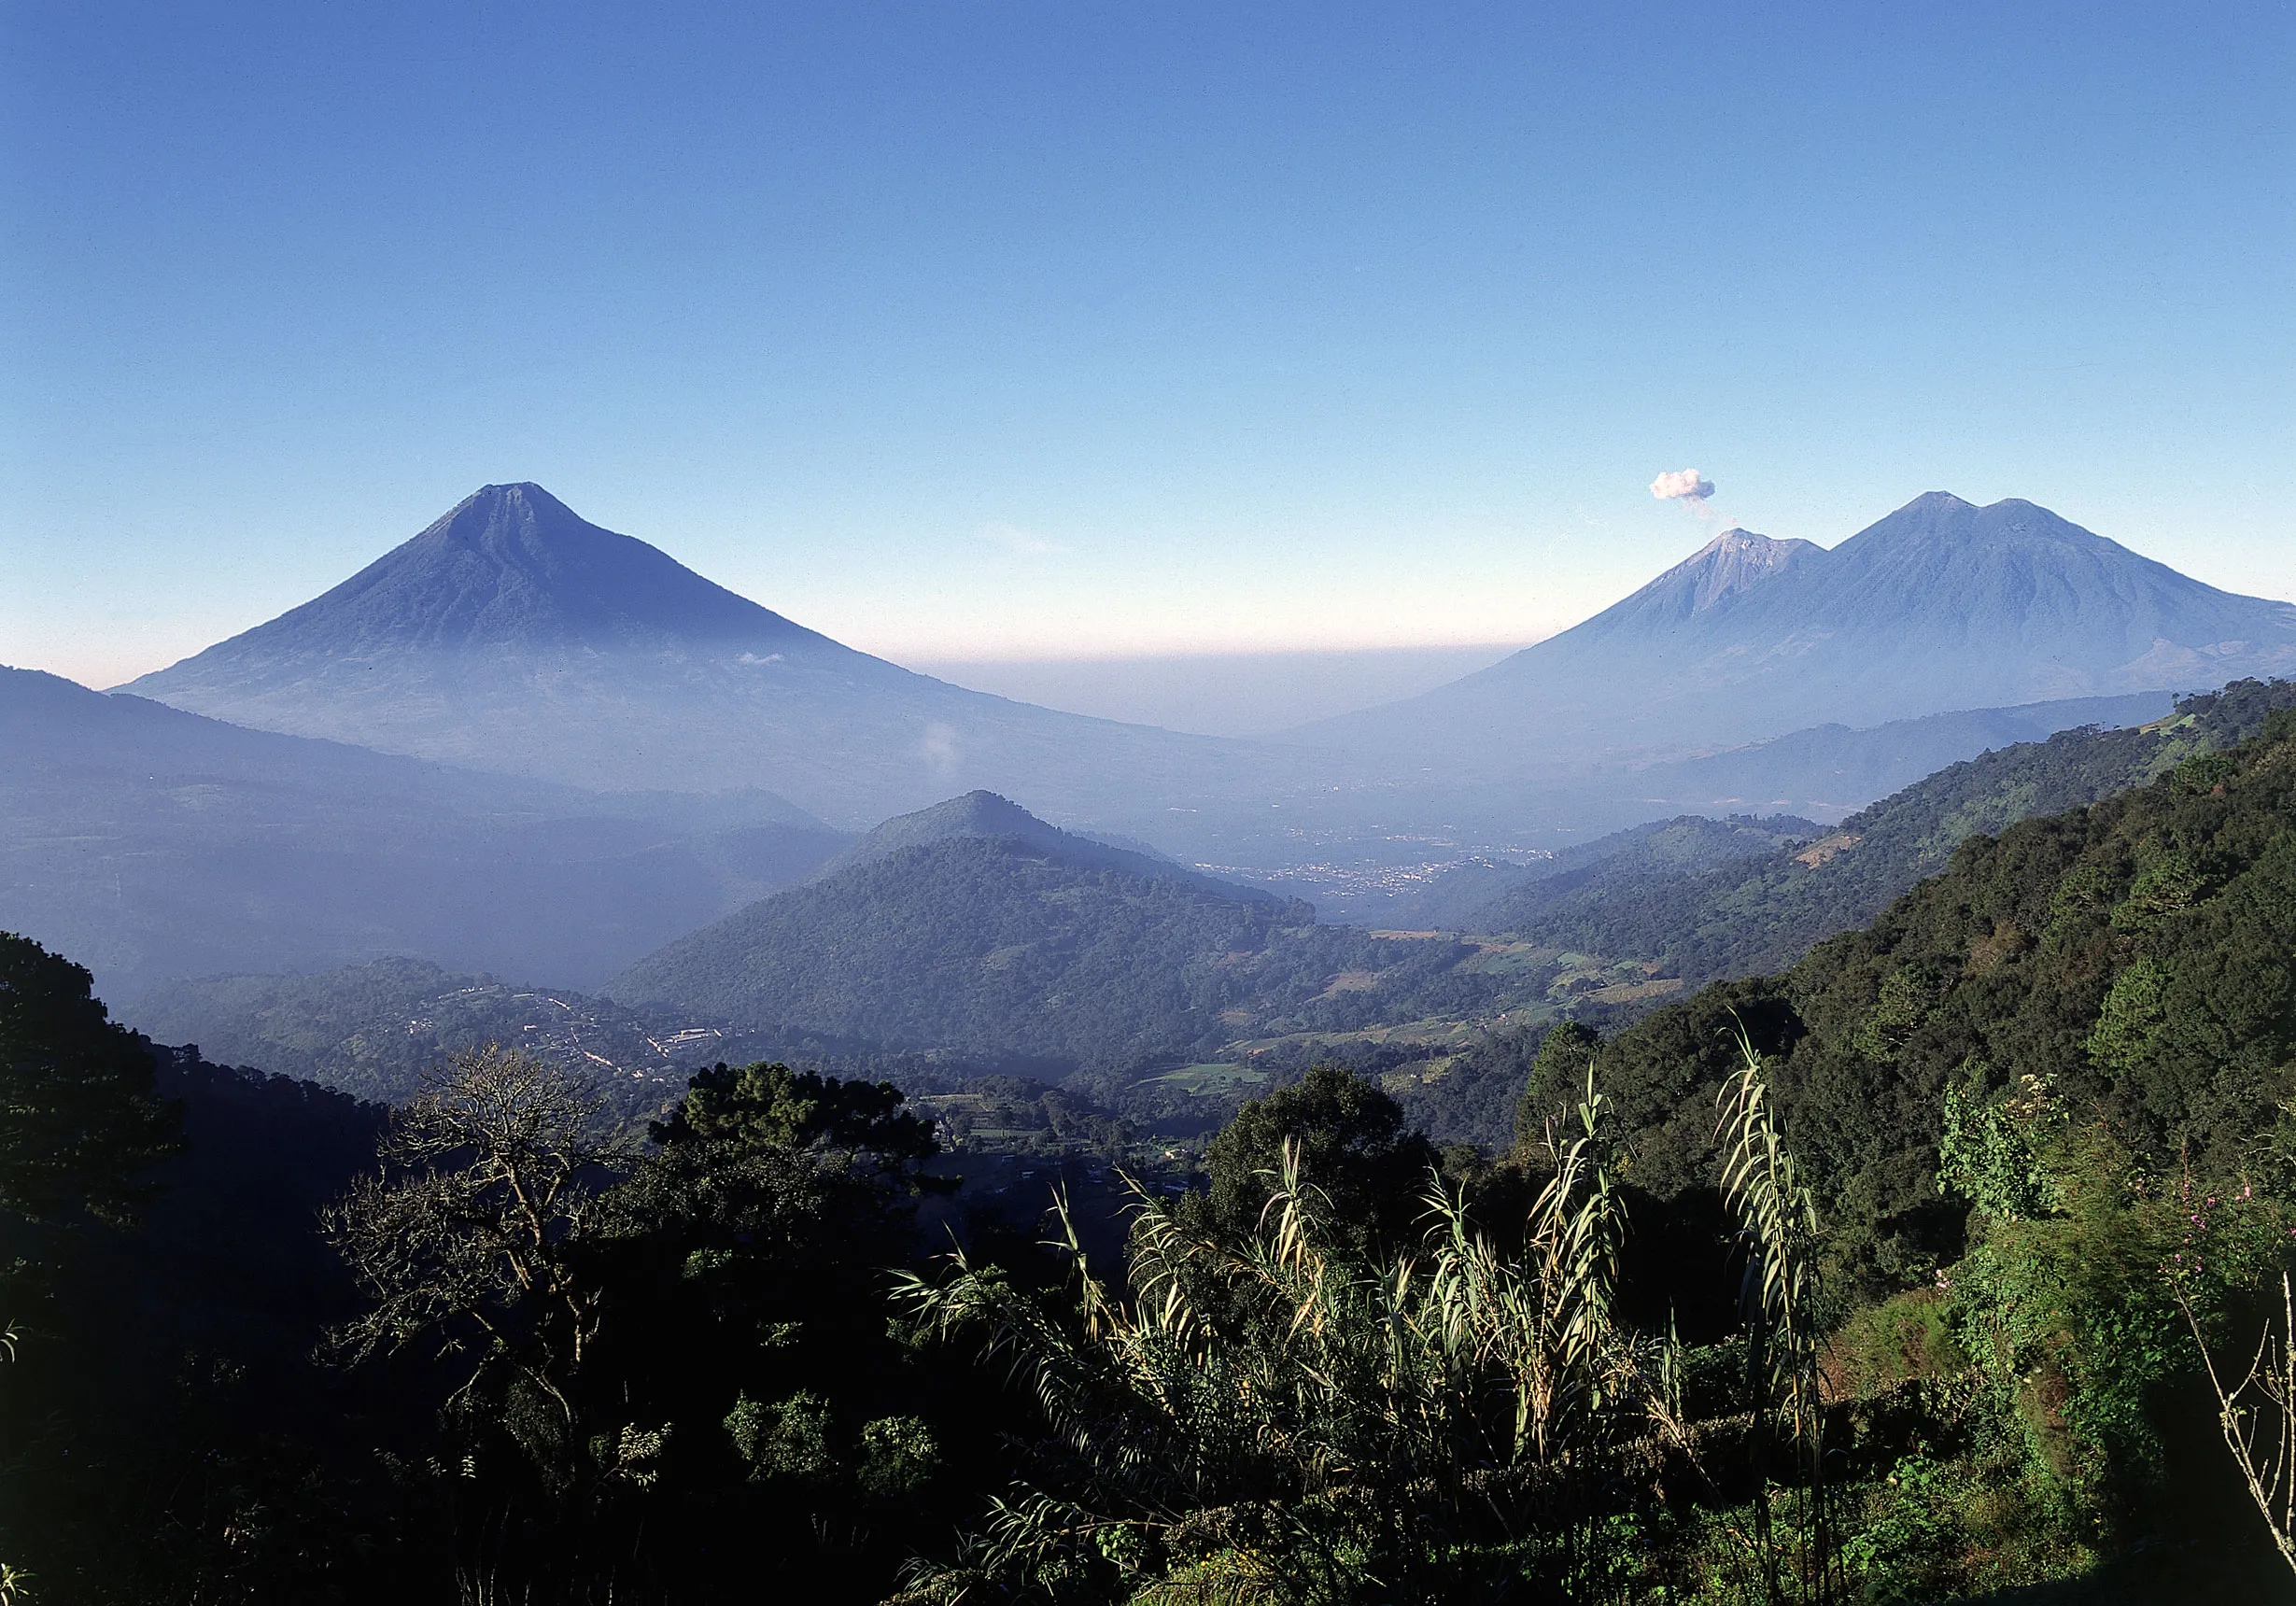 Sunrise volcano view, journey through Guatemala